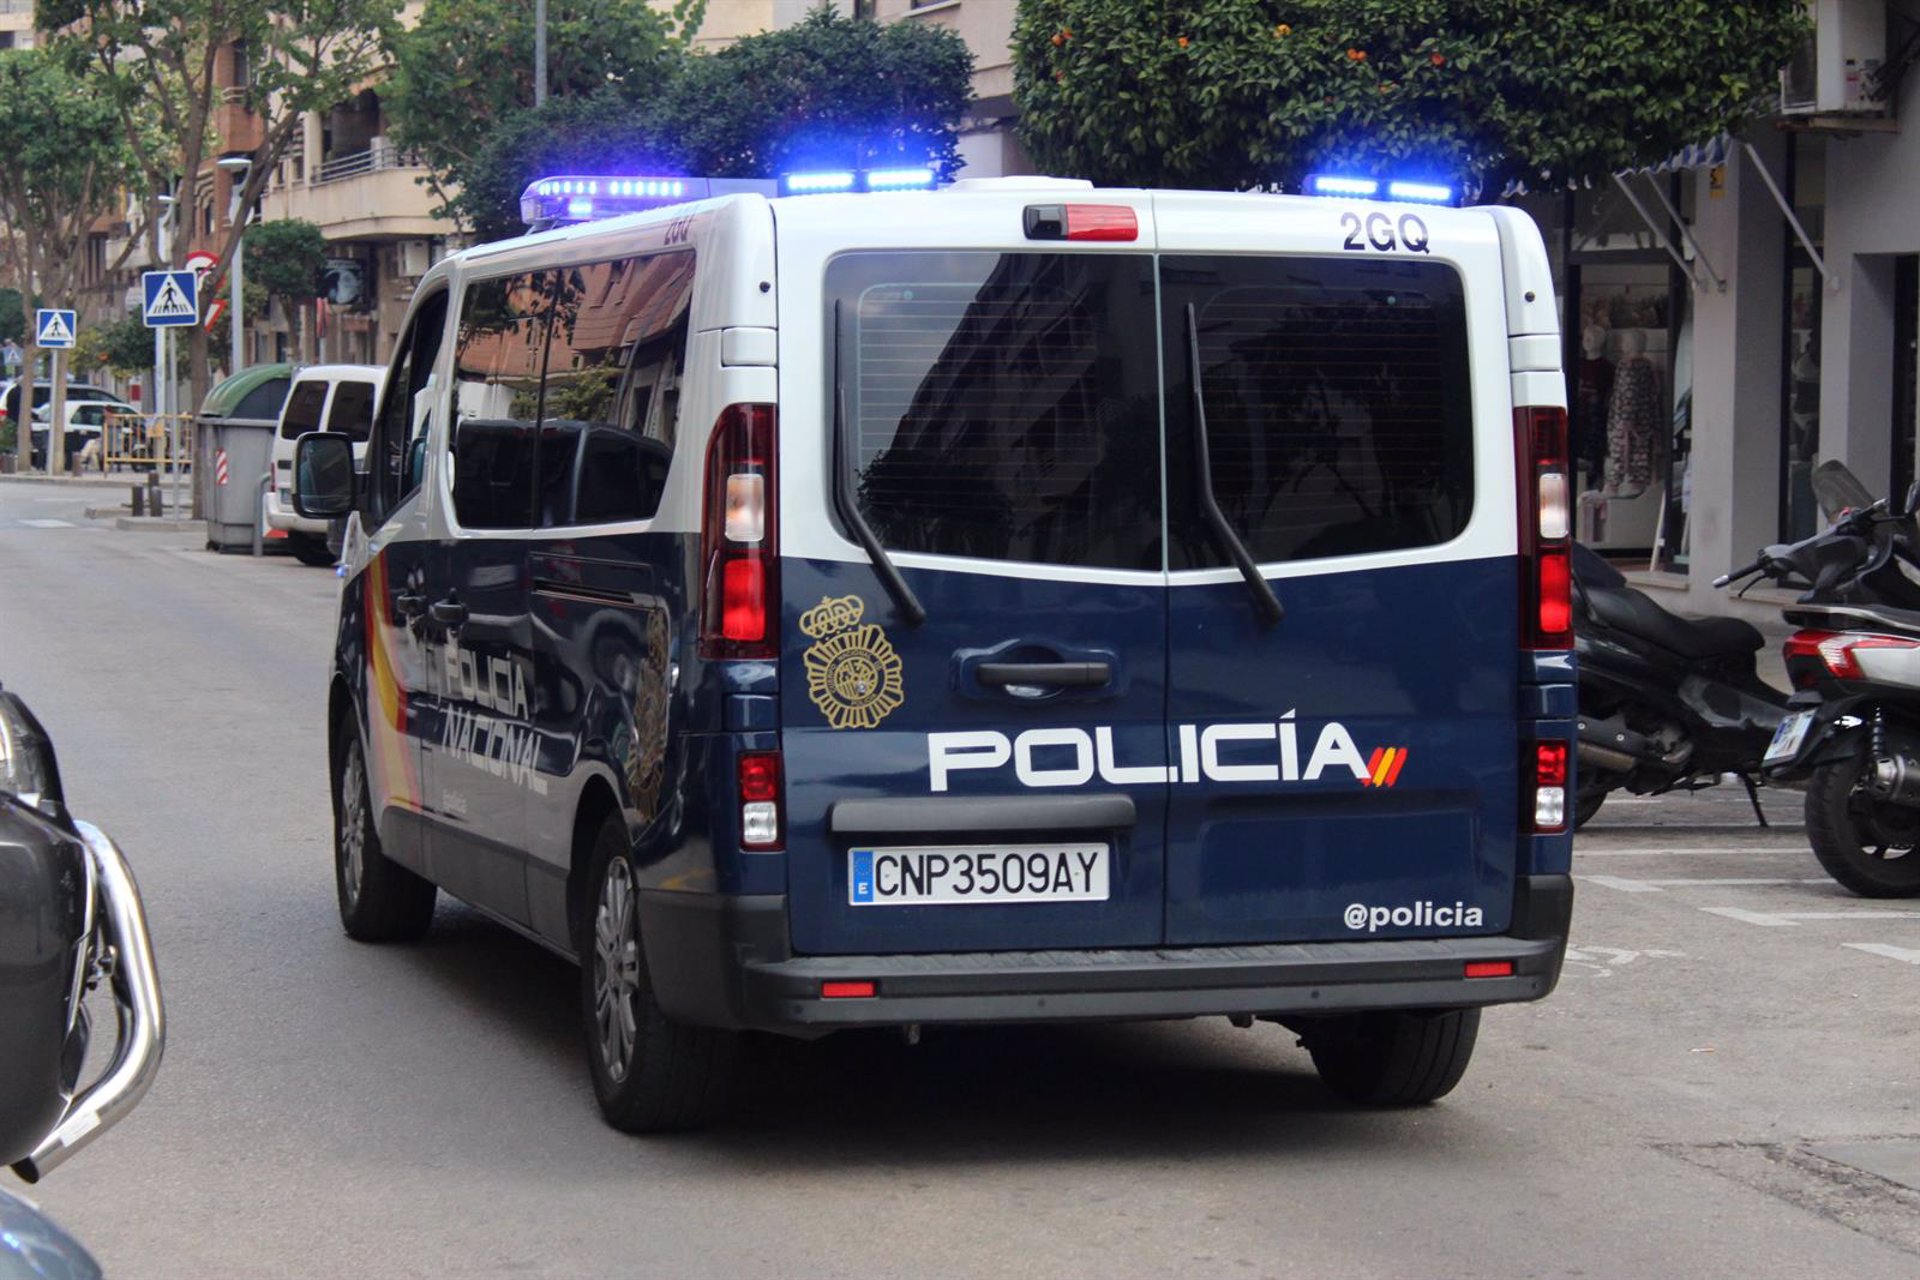 La investigación sobre el crimen de Castillo Higueras continúa abierta sin detenidos